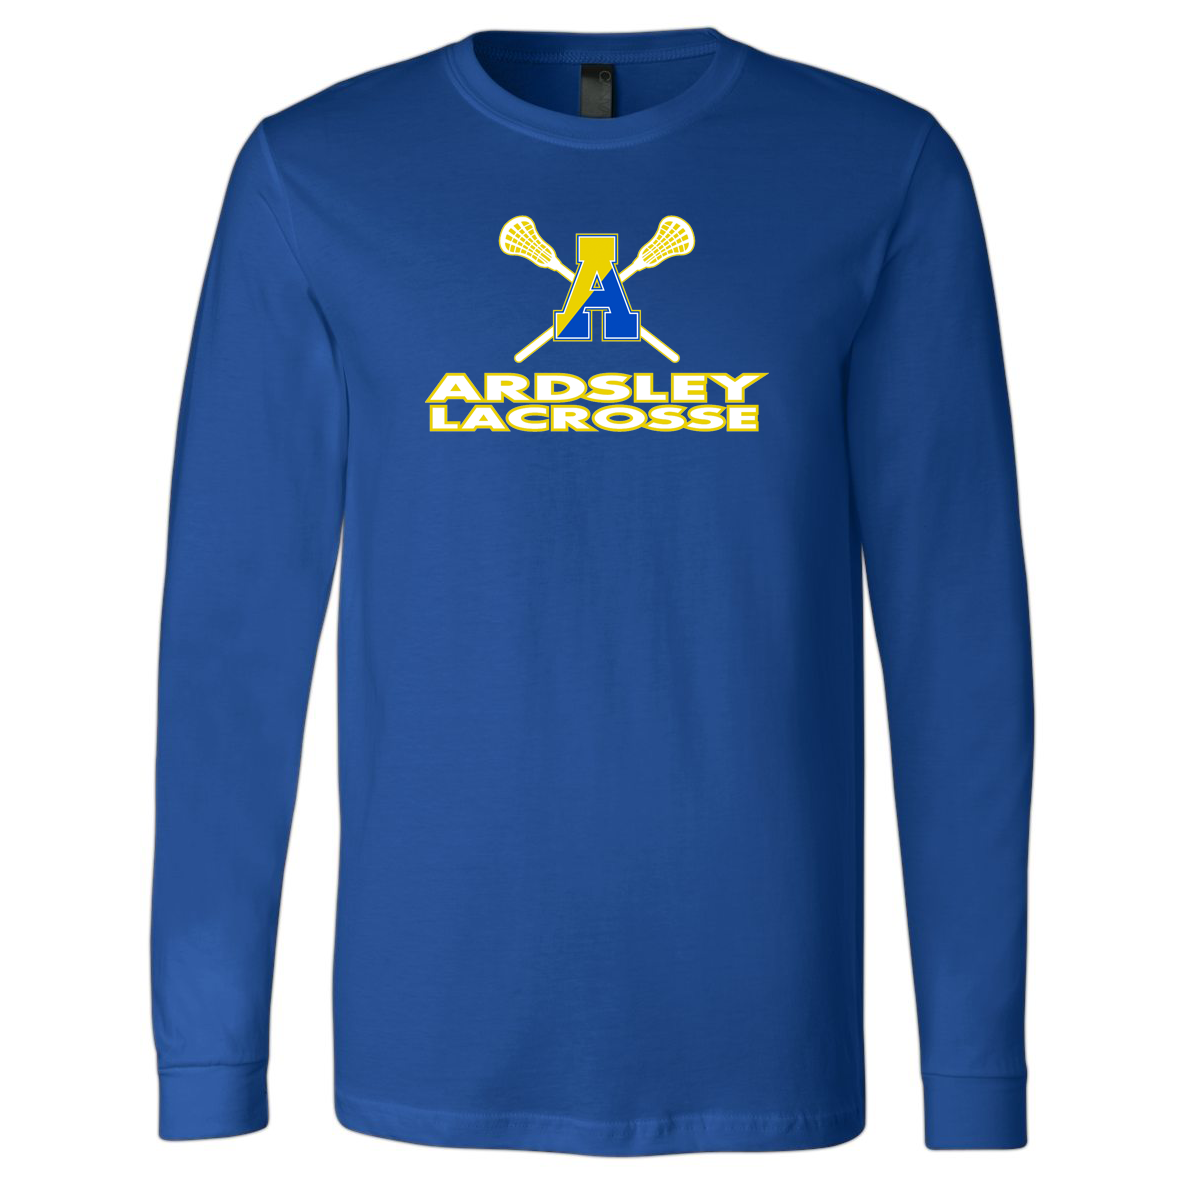 Ardsley High School Lacrosse Long Sleeve Tee